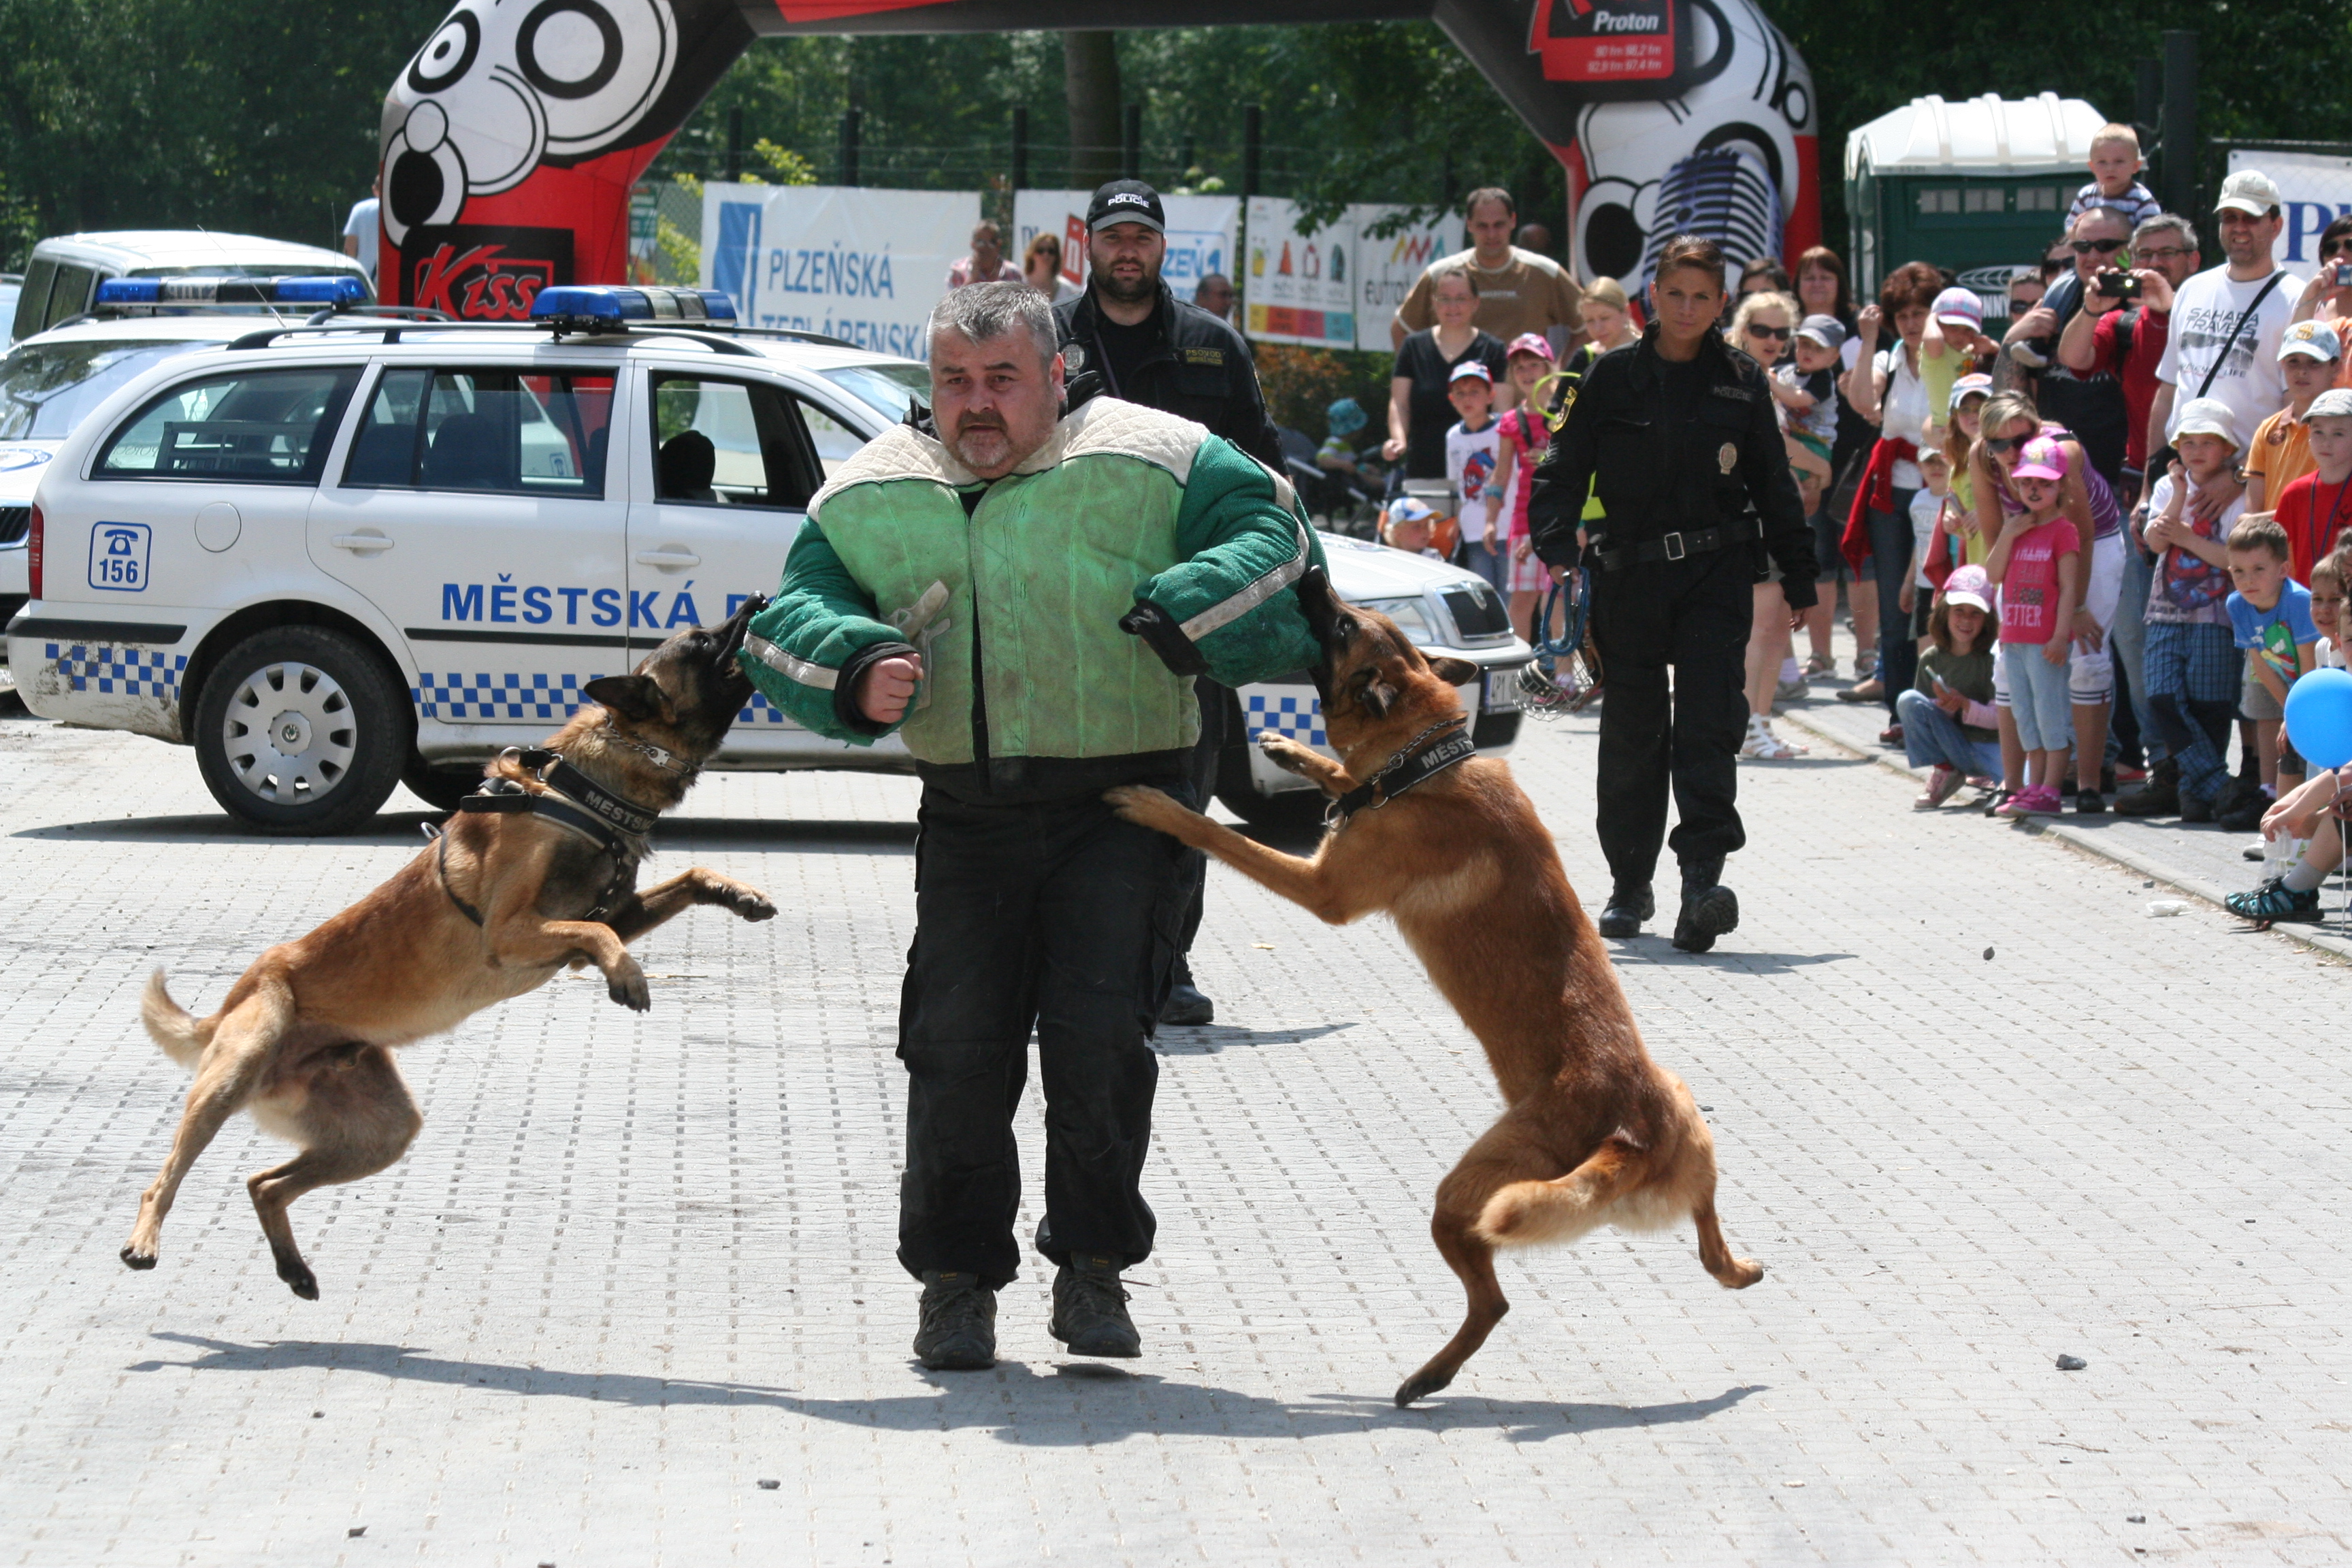 Zadržení pachatele dvěma psy